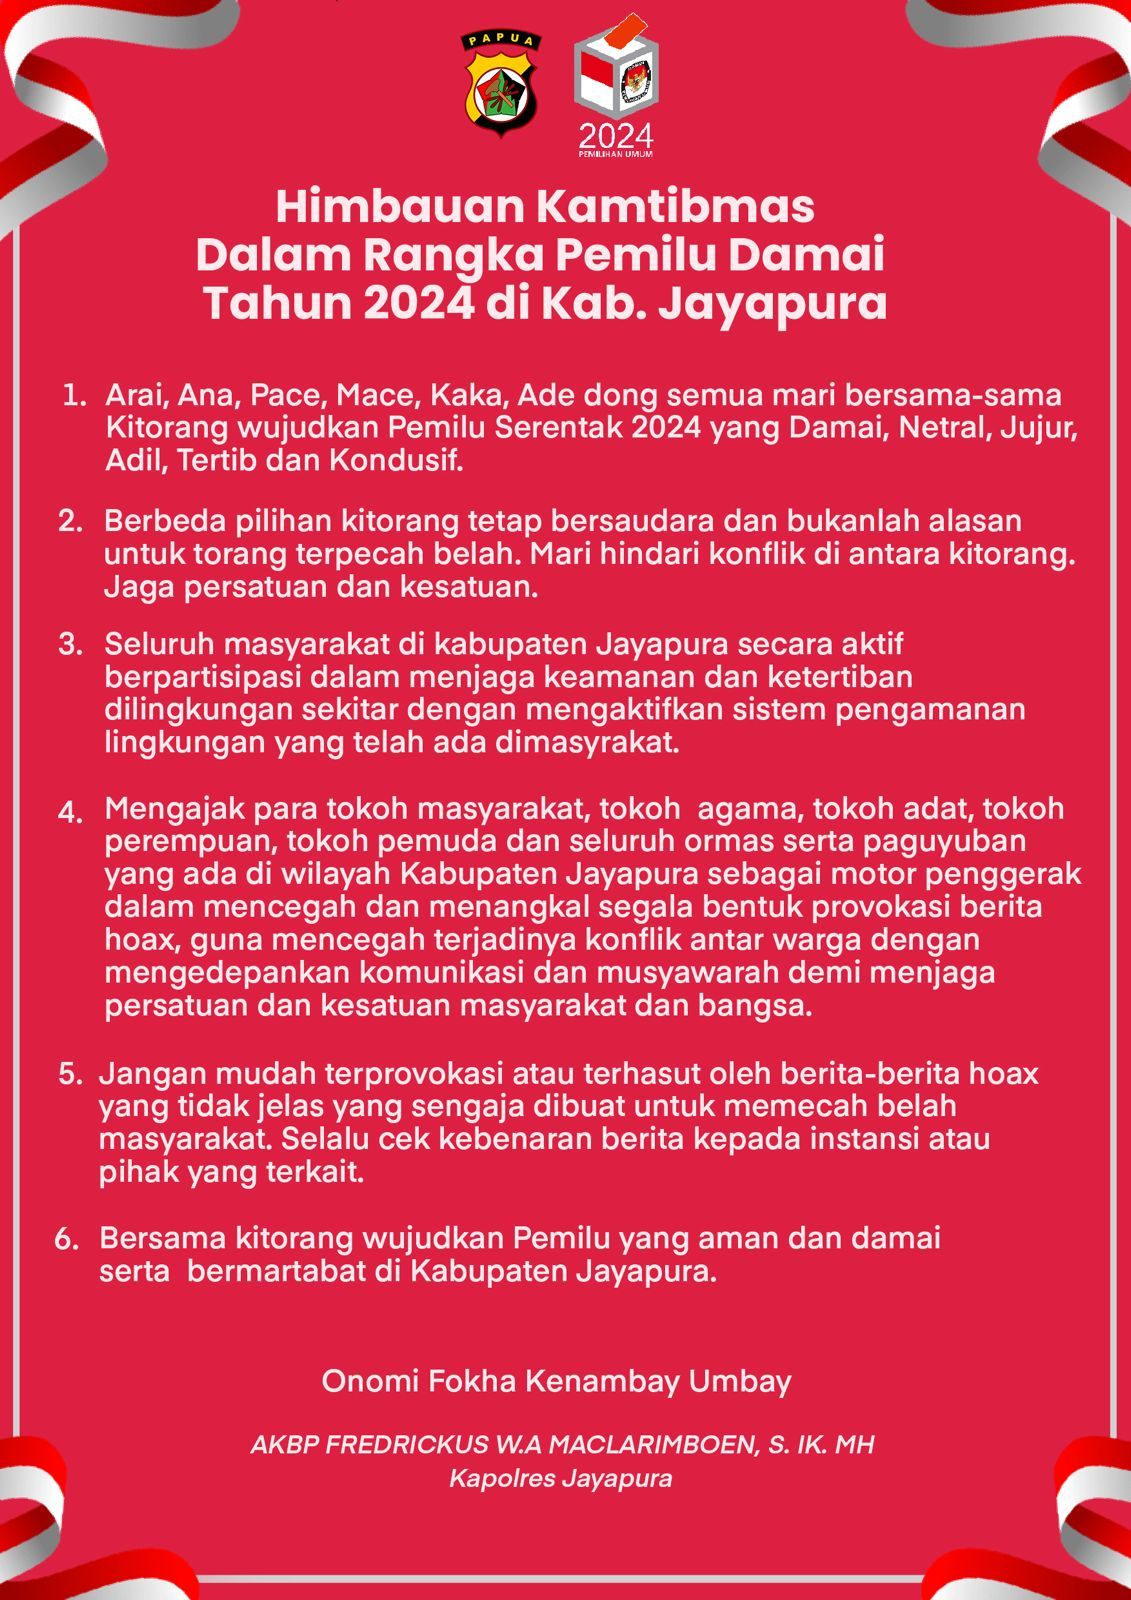  Kapolres Jayapura, AKBP Fredrickus  Maclarimboen, S.IK., M.H. Insert: Imbauan Kapolres Jayapura Kapolres Jayapura Keluarkan Imbauan Kamtibmas Pemilu Damai Tahun 2024.